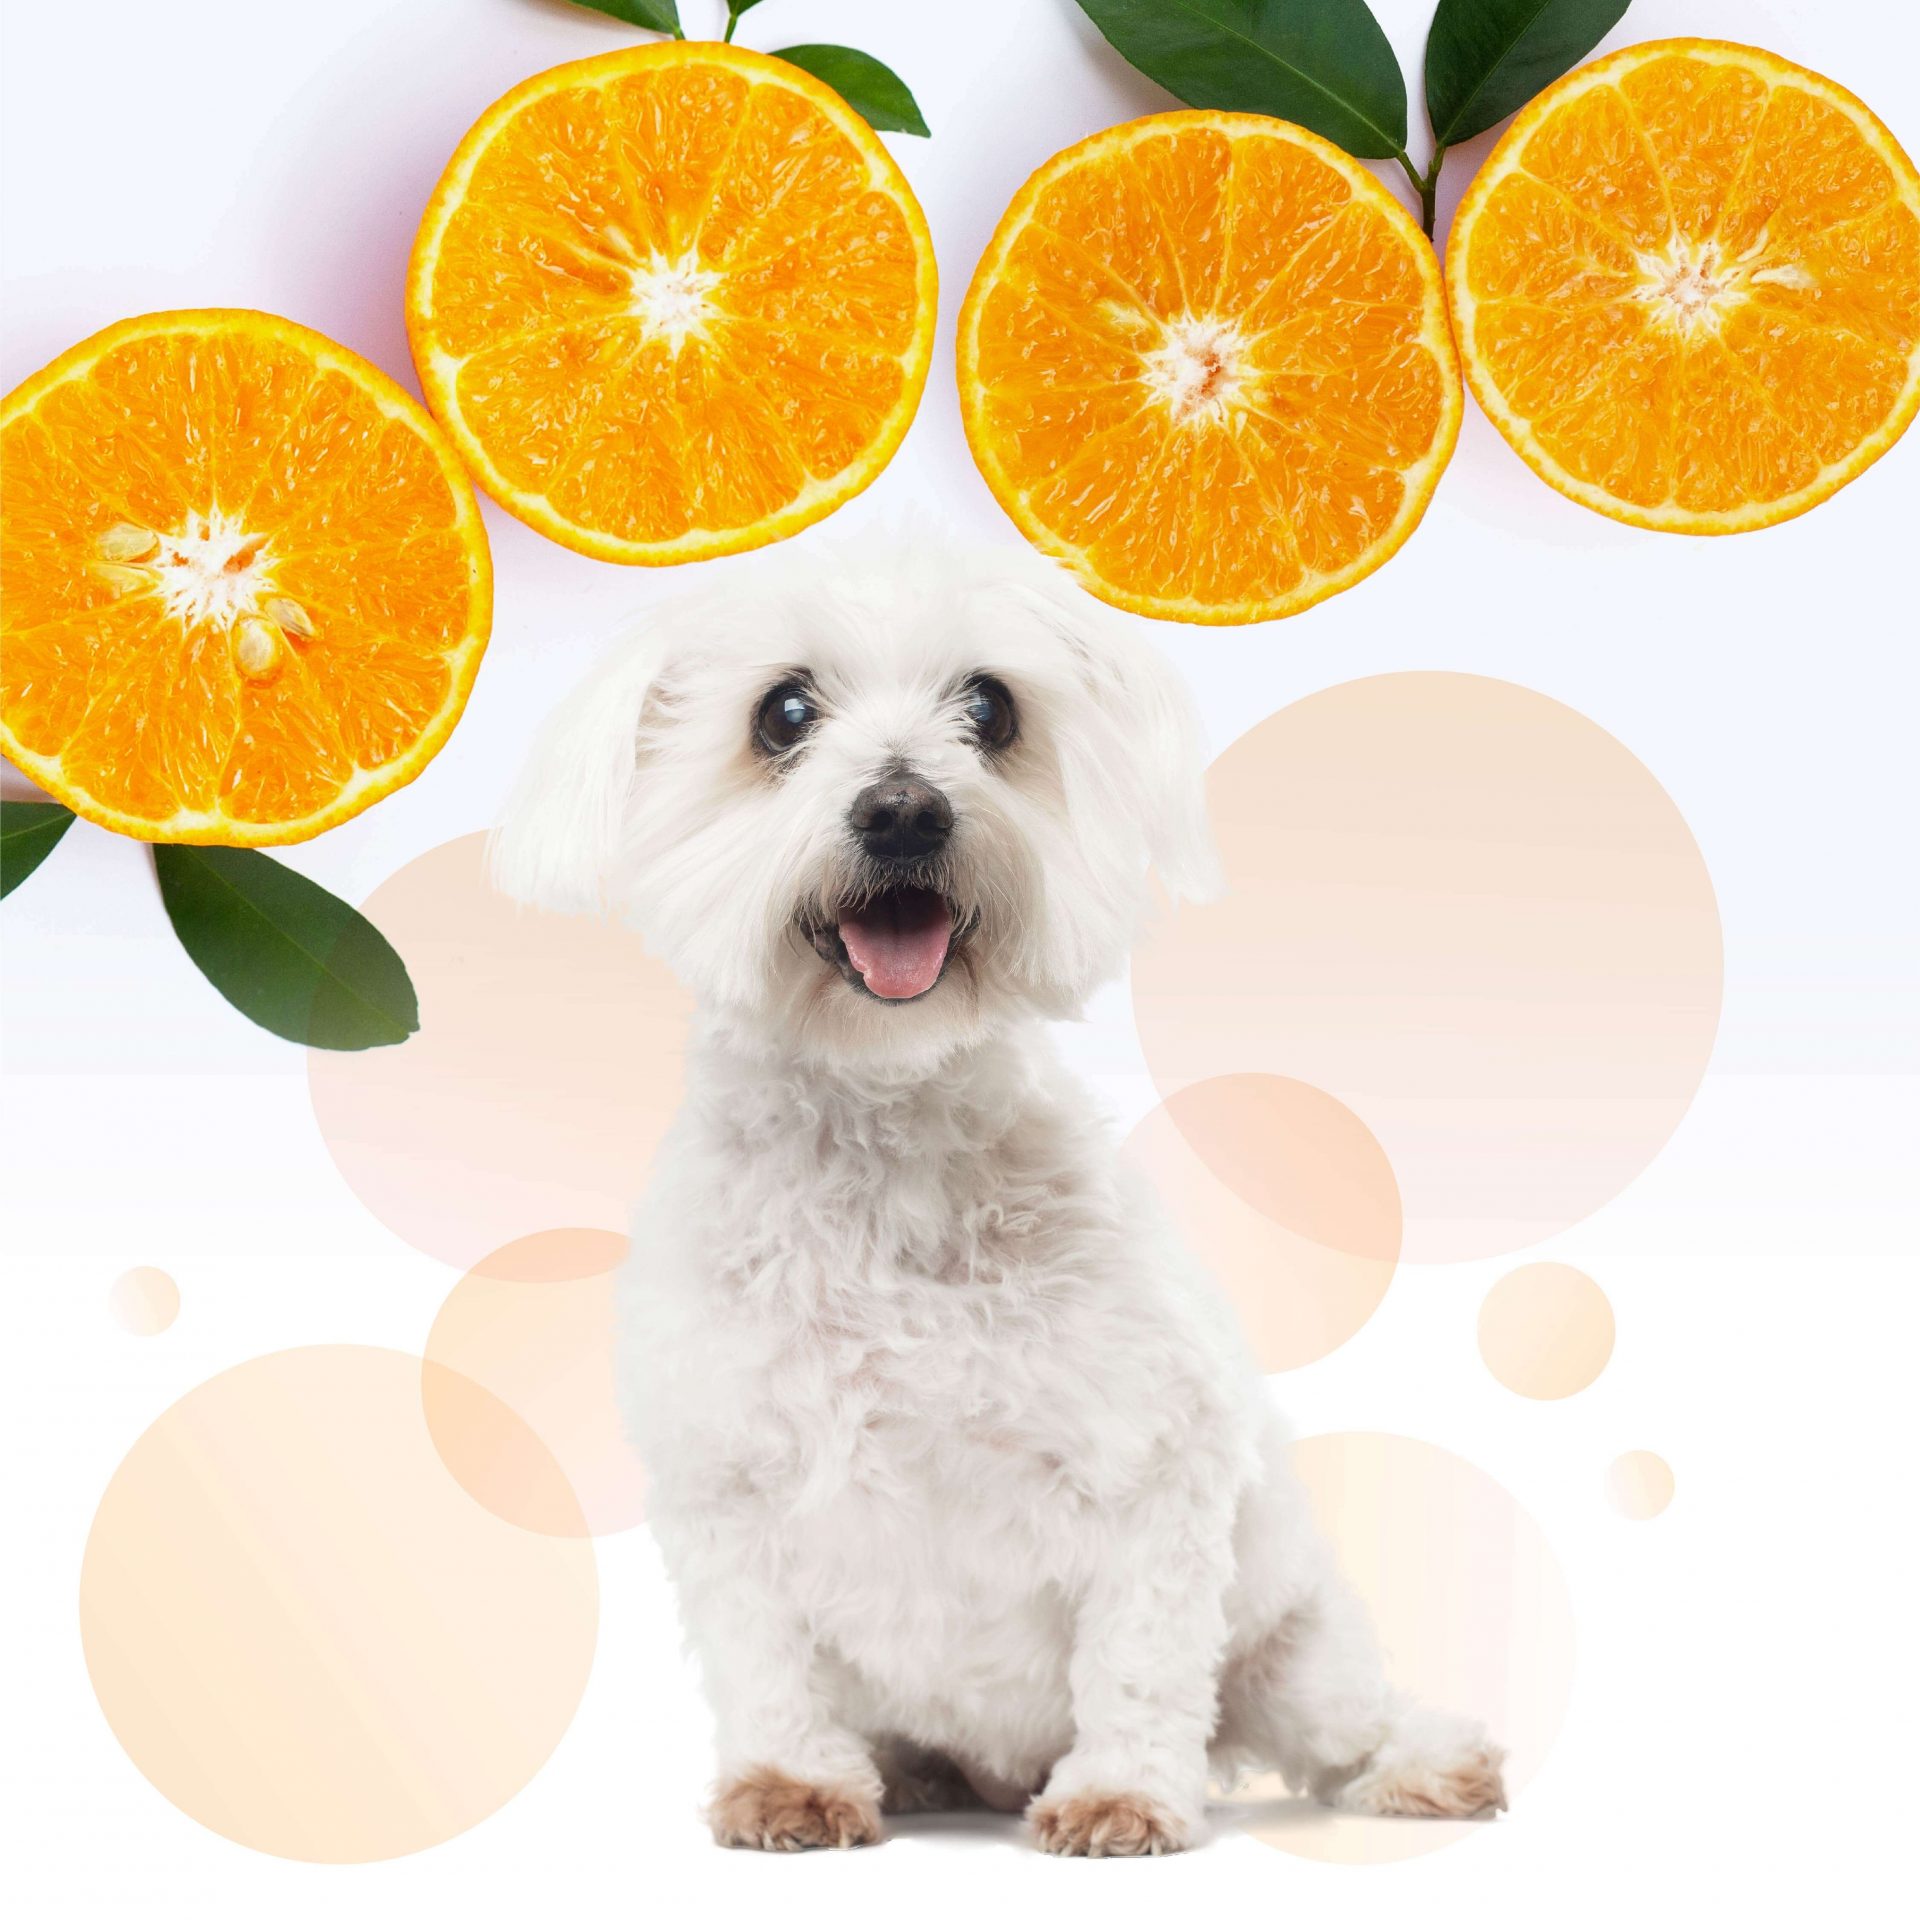 ペットのシャンプーだからこそ洗いあがりの香りが大事という飼い主様。セボダームはフレッシュなマンダリンオレンジの香りが漂い素敵なバスタイムを演出してくれます。